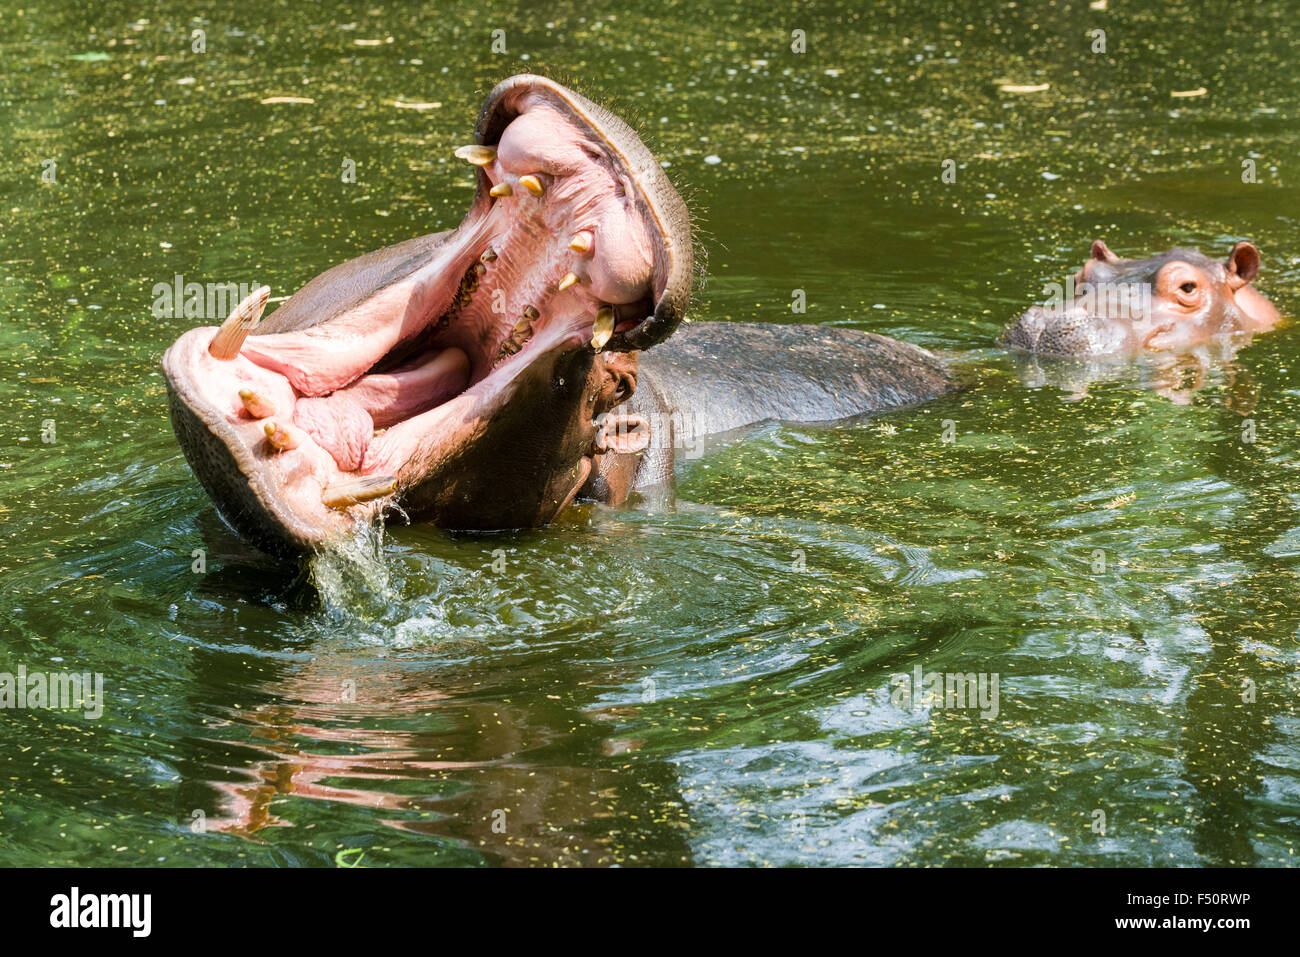 Ein nilpferd (hippopotamus amphibius) mit weit geöffneten Mund ist schwimmen im Wasser, ein zweites dahinter im Zoo Stockfoto